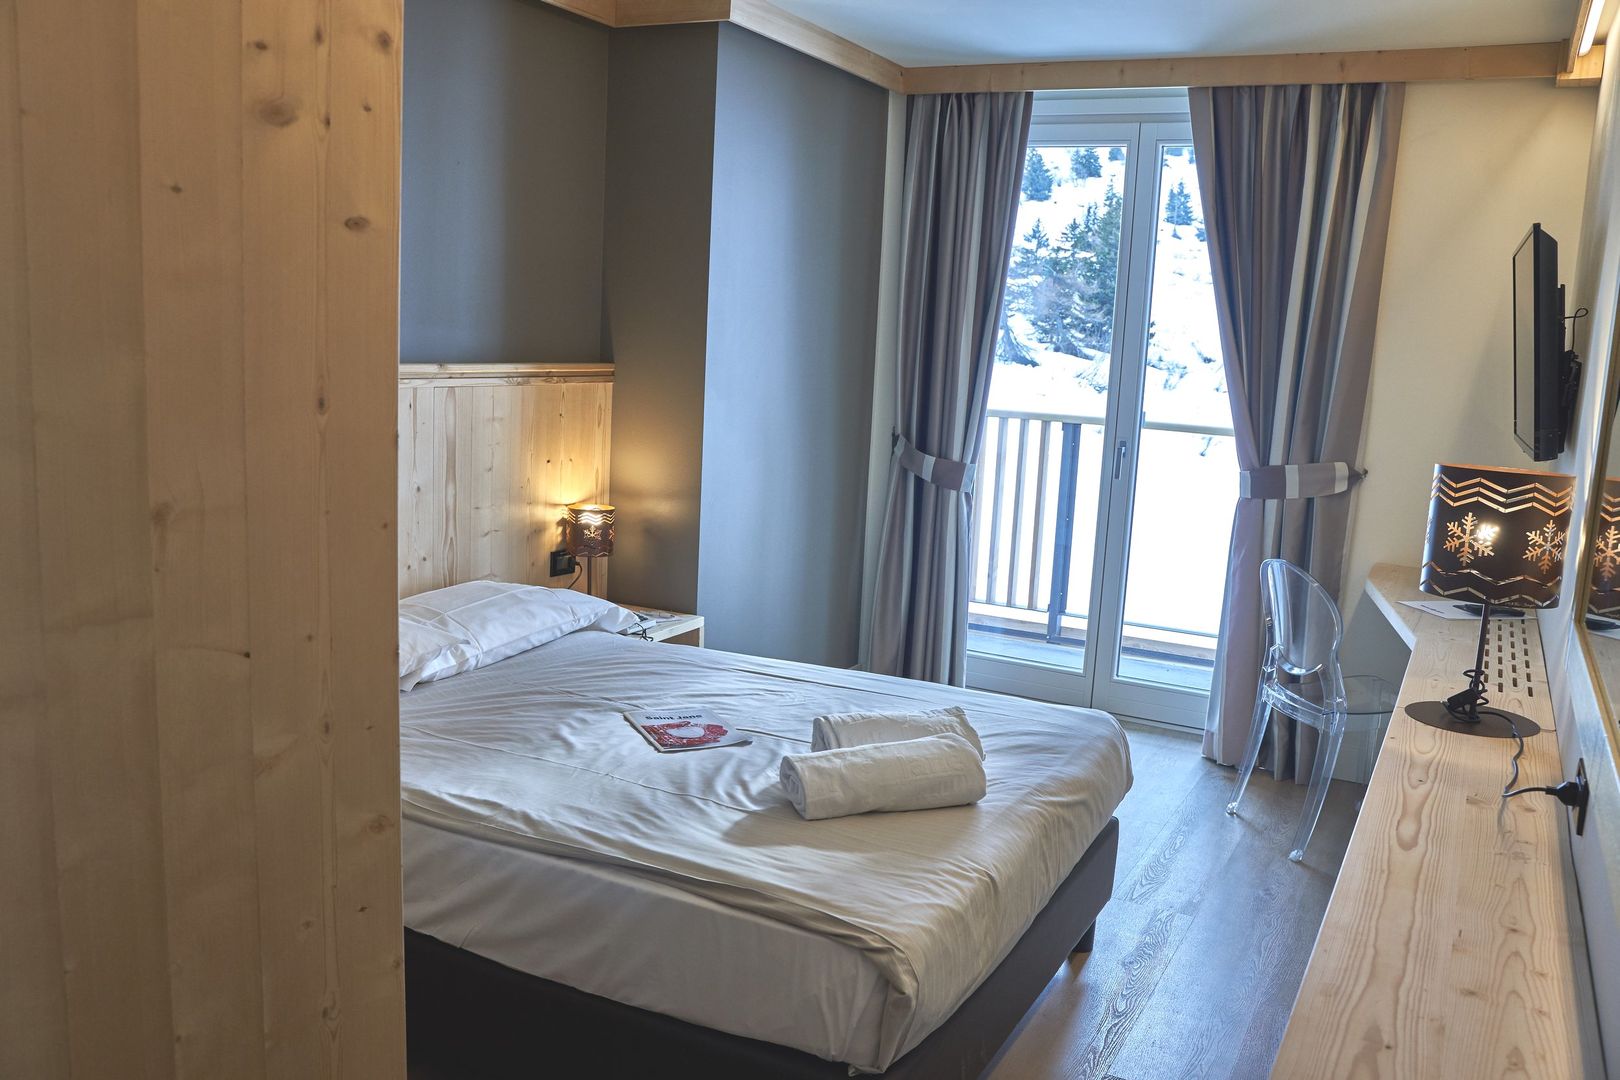 Goedkope wintersport Val di Sole ❄ Hotel Pian di Neve